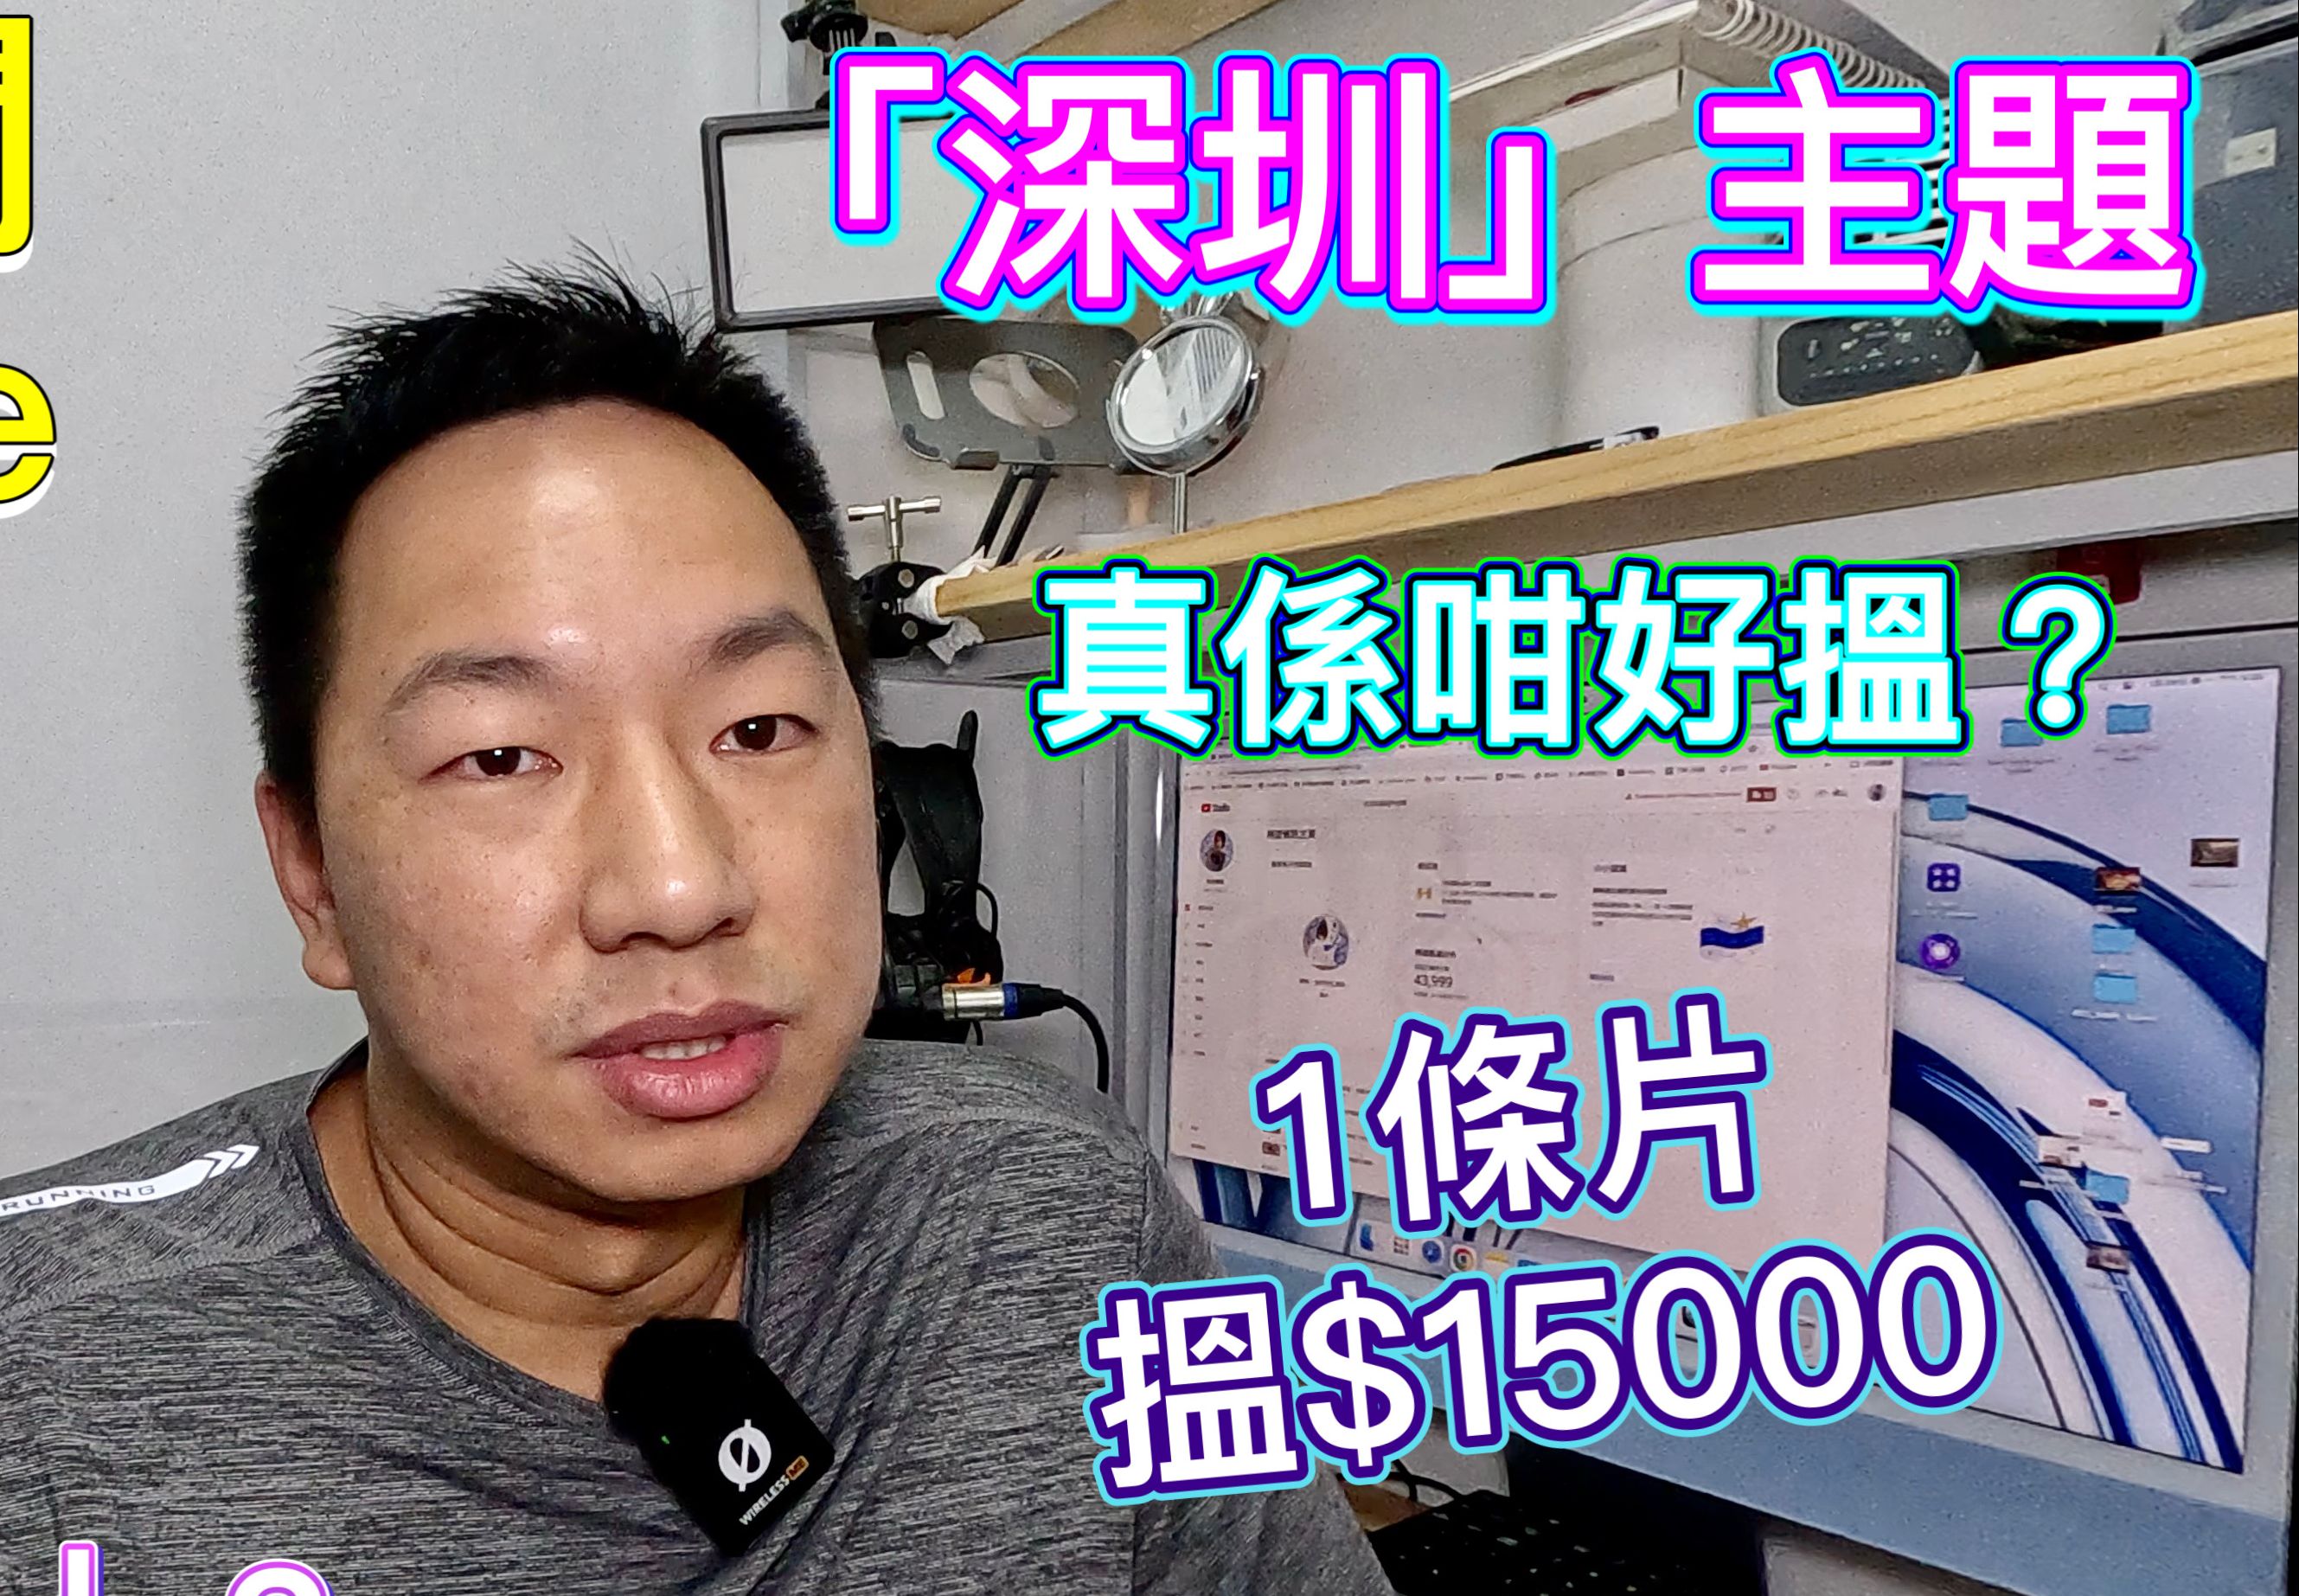 真实公开拍视频油管收益，深圳风口月赚10多万，单一视频赚15000